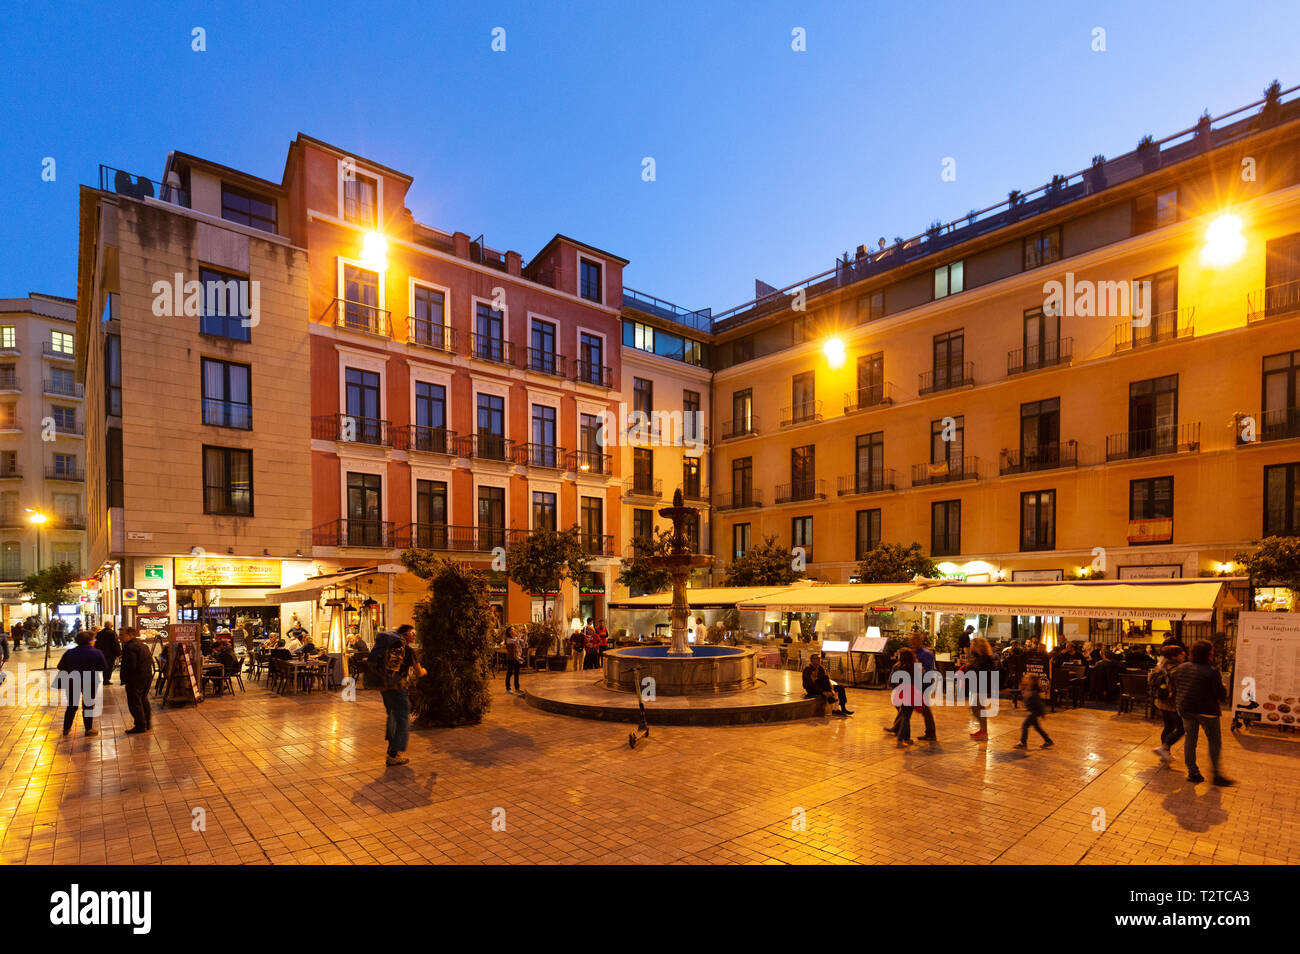 Leute auf der Straße in der Abenddämmerung, Plaza del Obispo, Malaga Andalusien Spanien Stockfoto